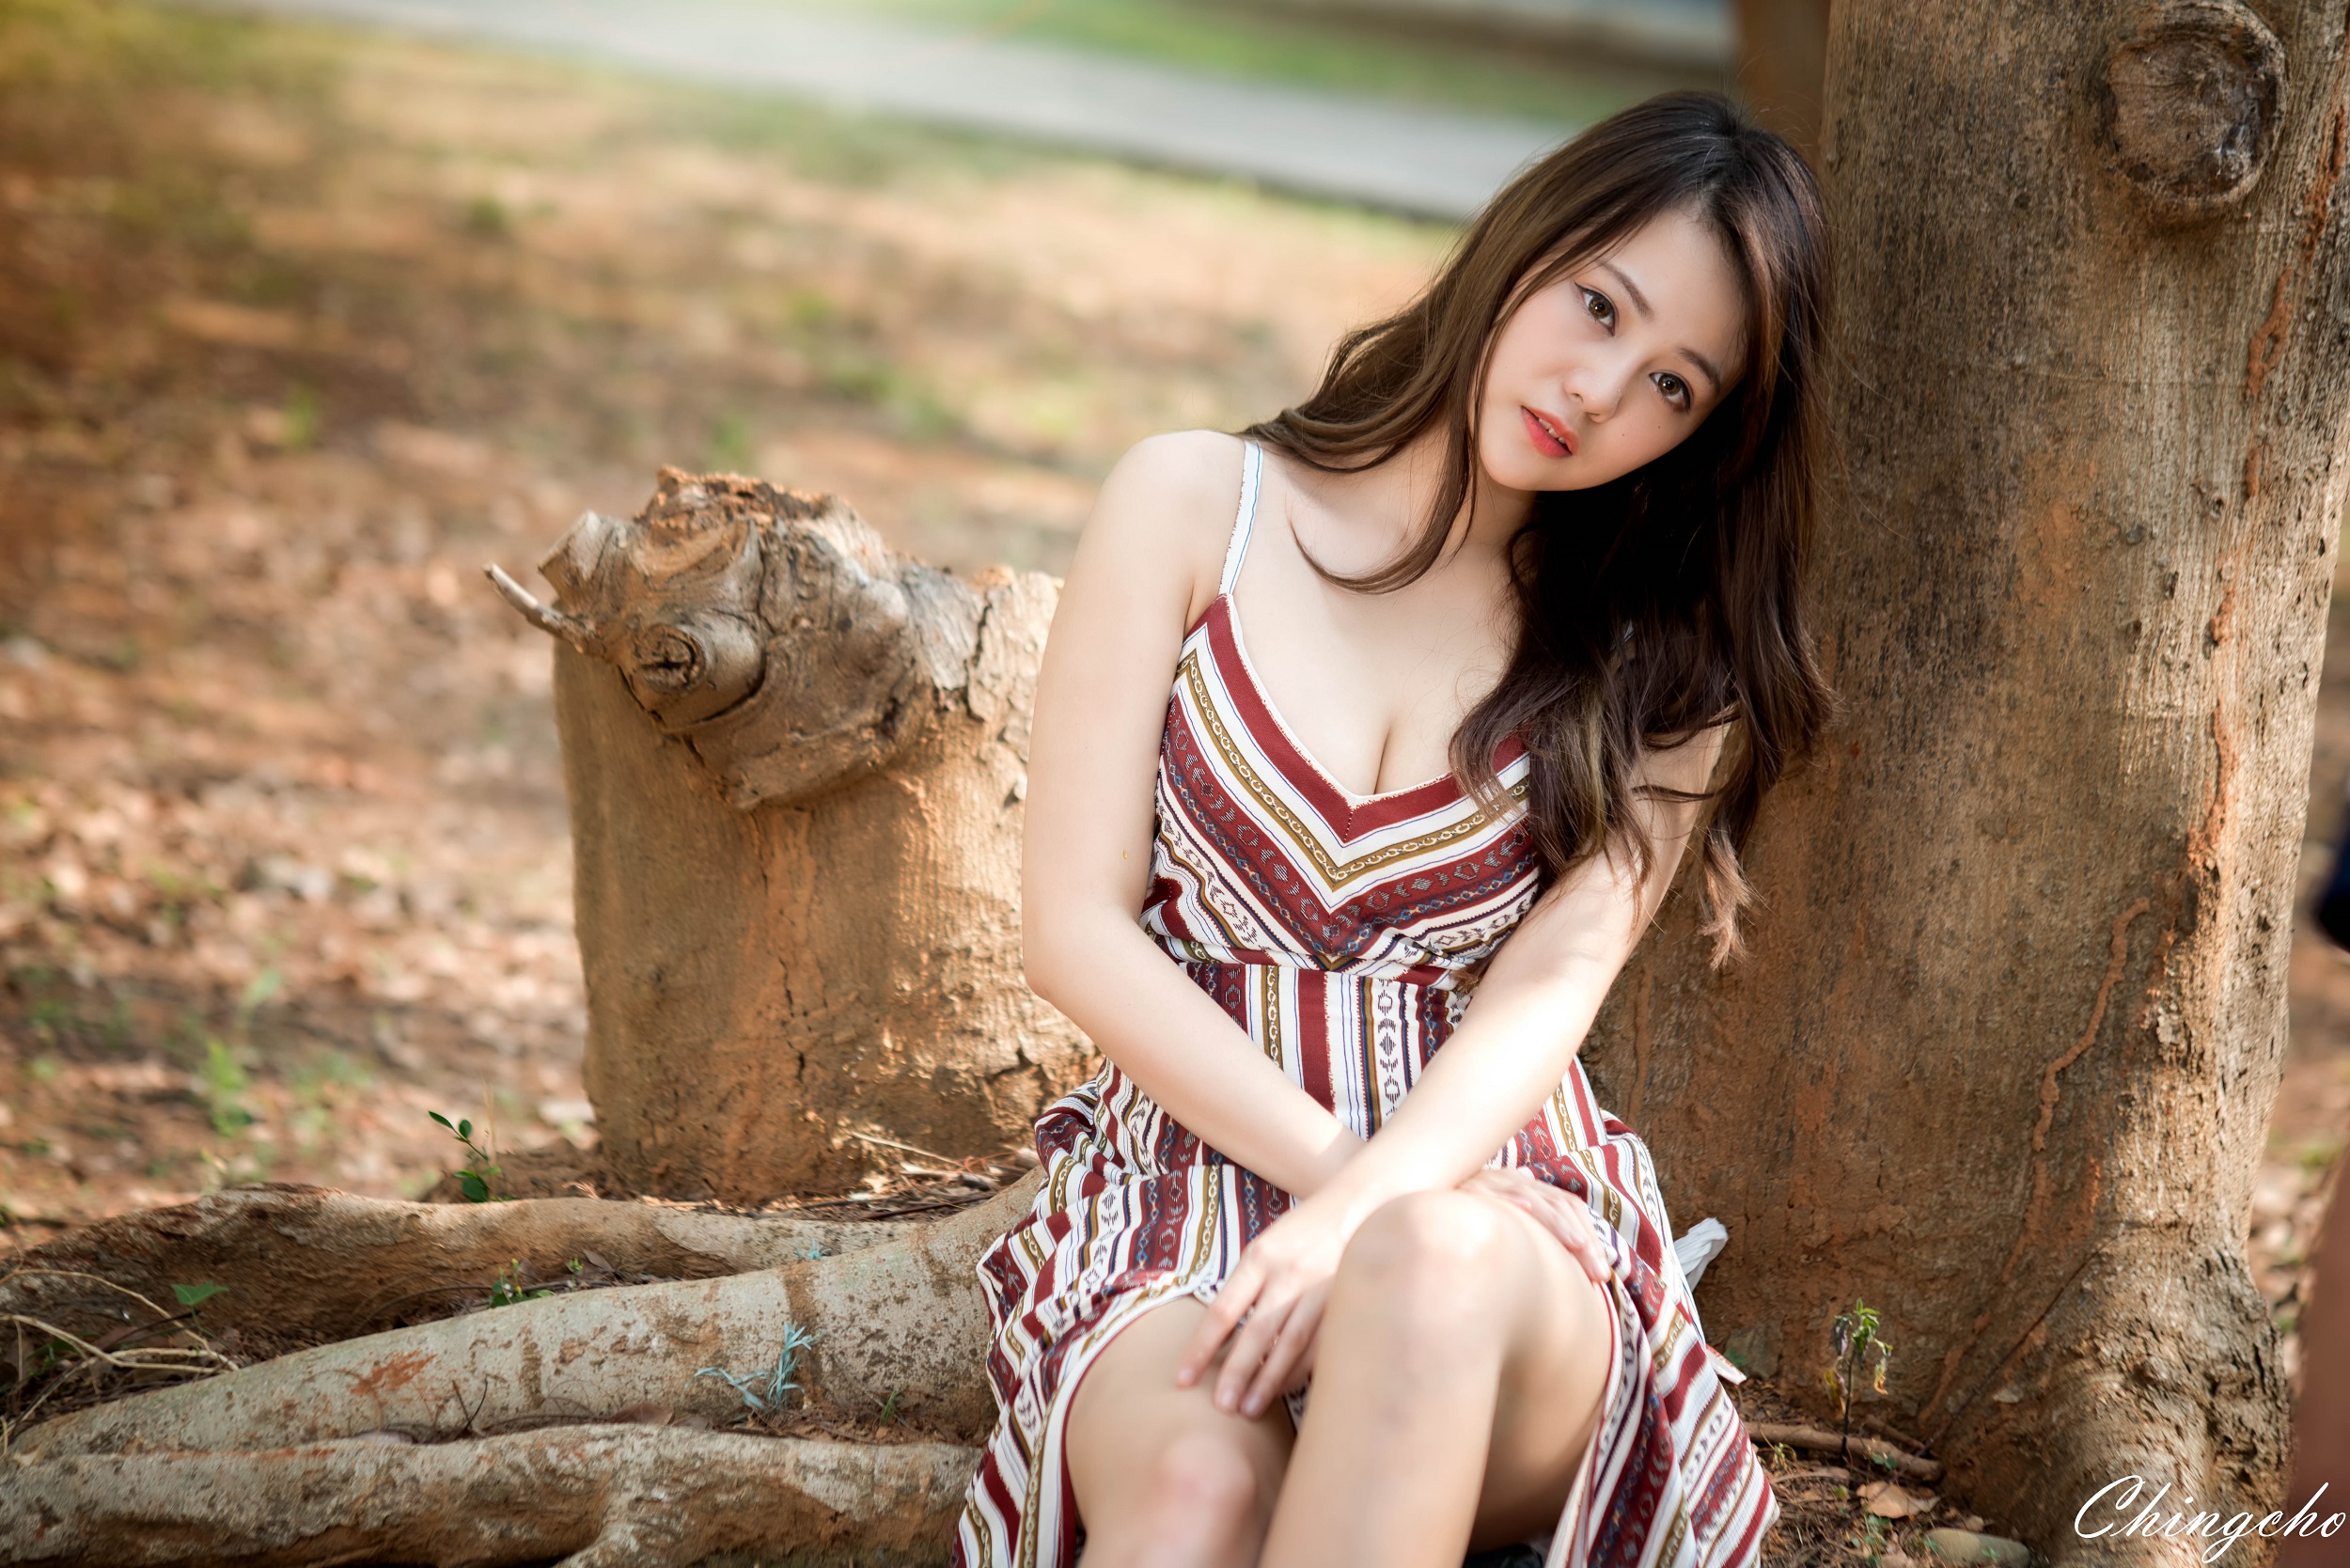 Women Model Asian Looking At Viewer Women Outdoors Brunette Dress Sitting Hands On Legs Sun Hui Tong 2500x1668